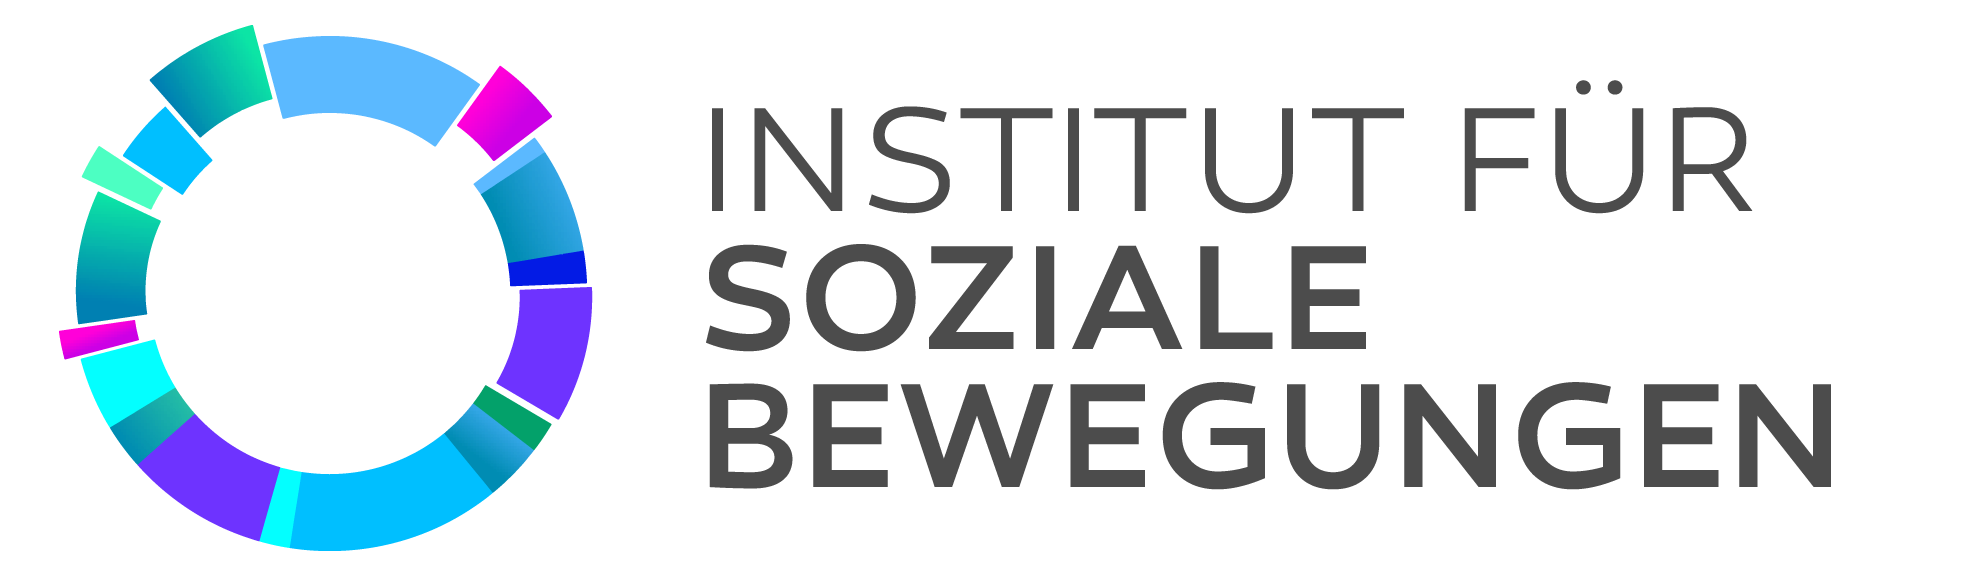 Isb-logo